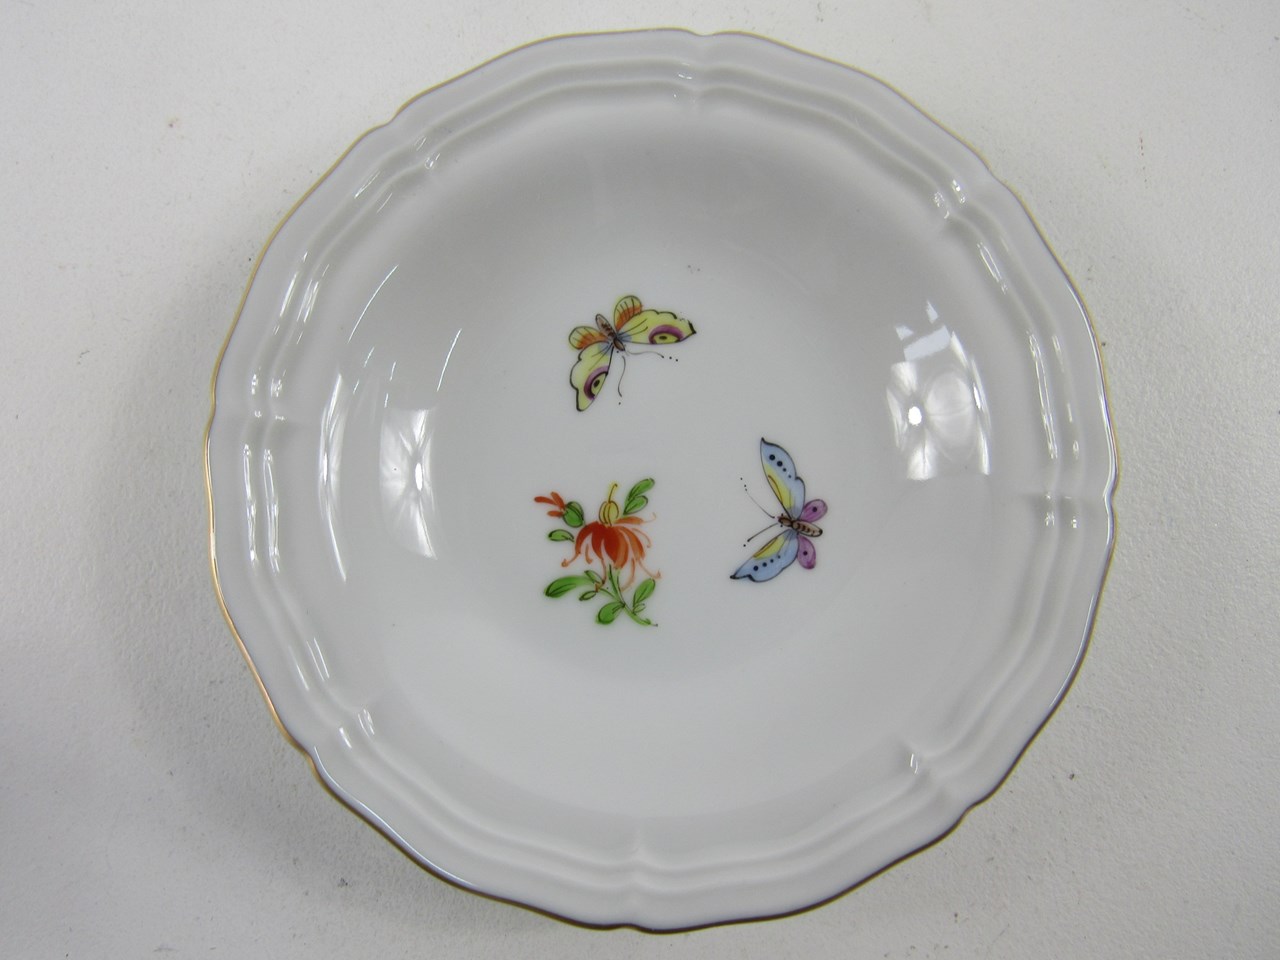 Bild av Höchst Porzellan Konfektteller mit Schmetterling & Blumen Dekor
